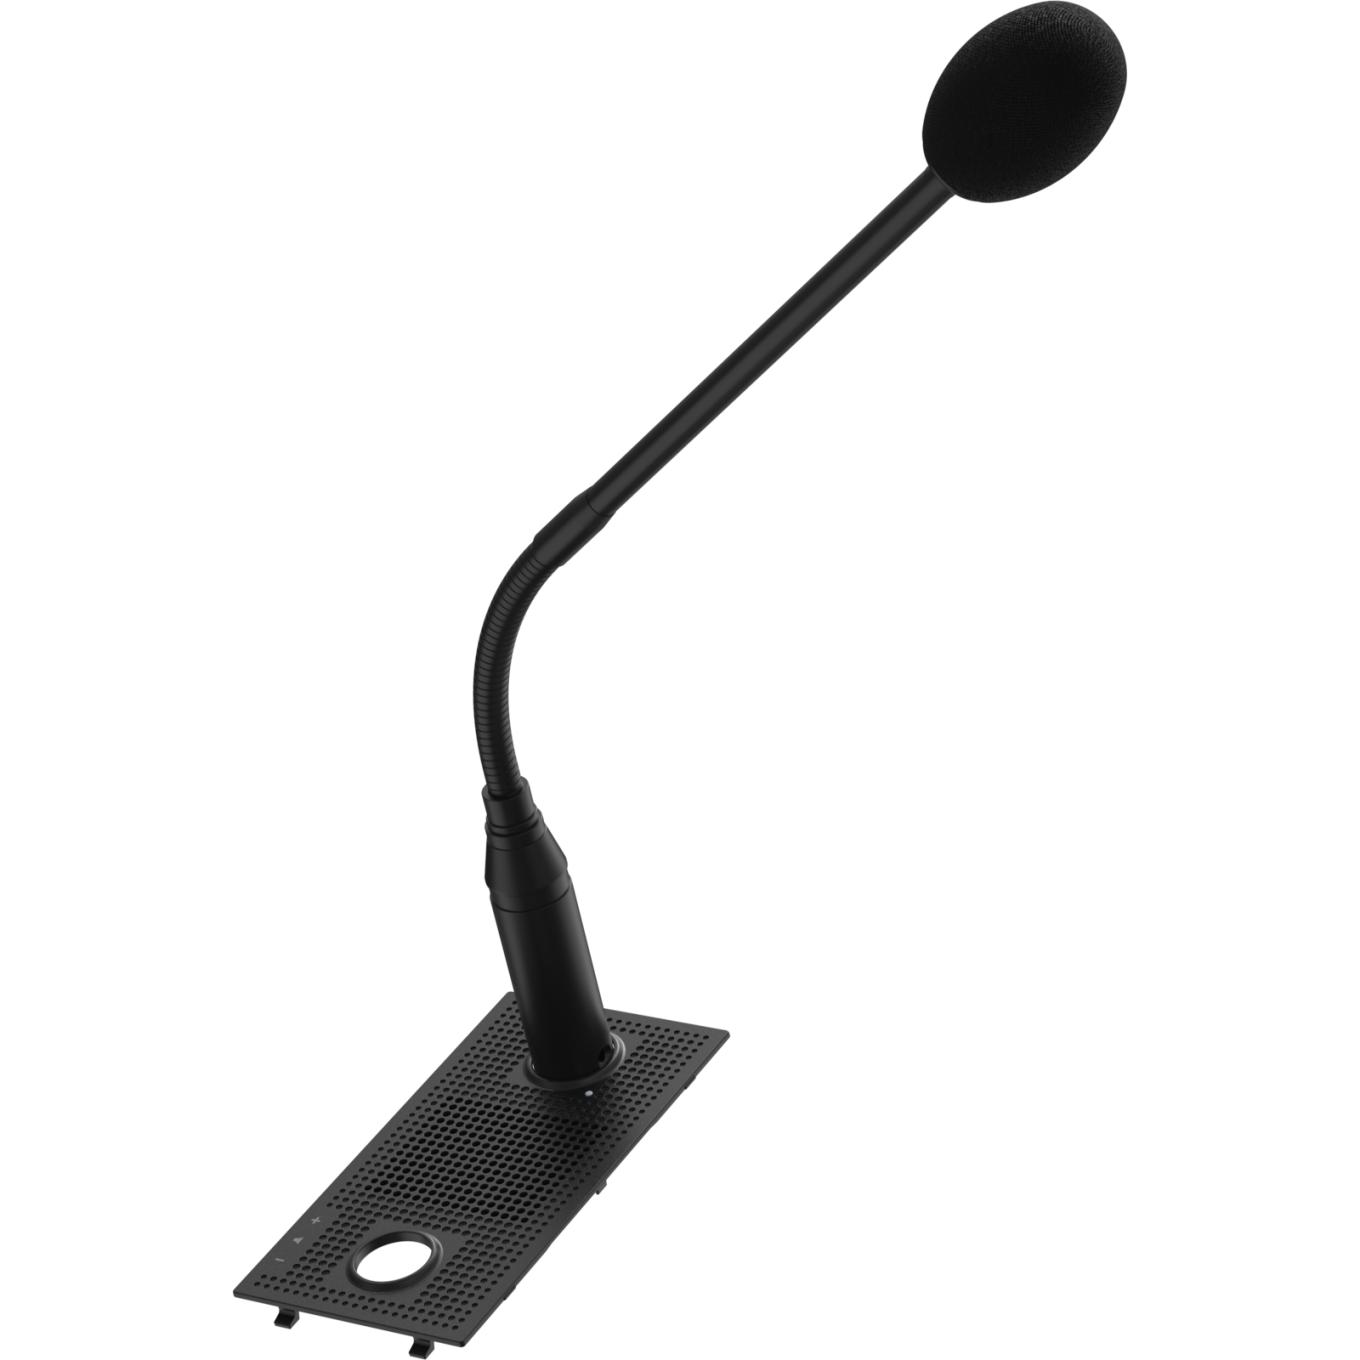 Czarny mikrofon AXIS TC6901 na gęsiej szyi, widok z lewej strony.